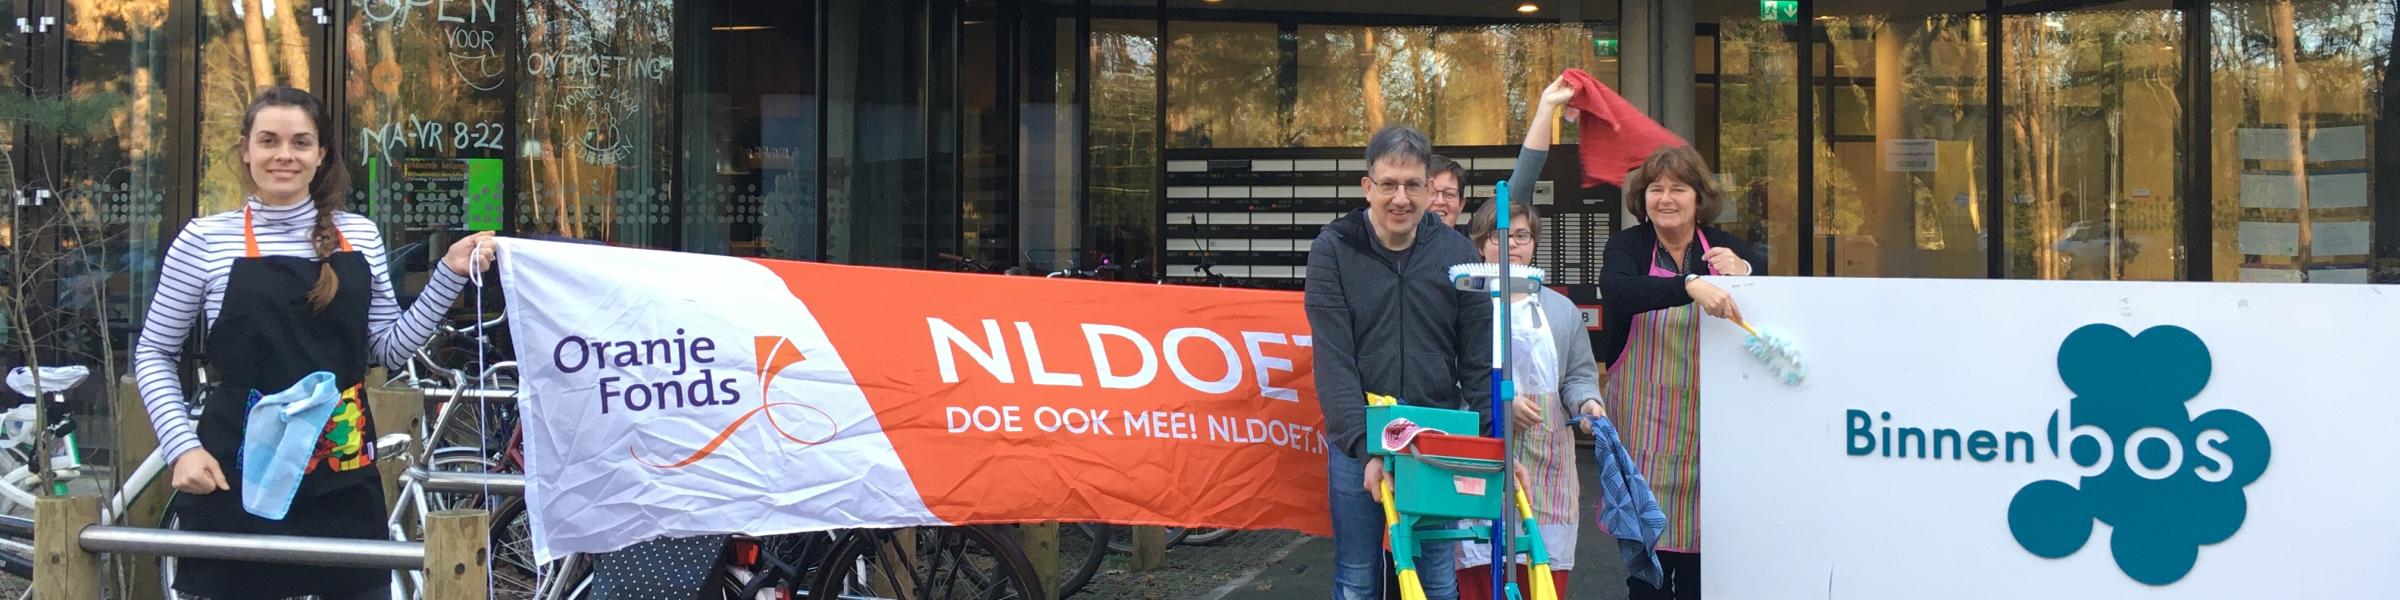 NL Doet actie Binnenbos